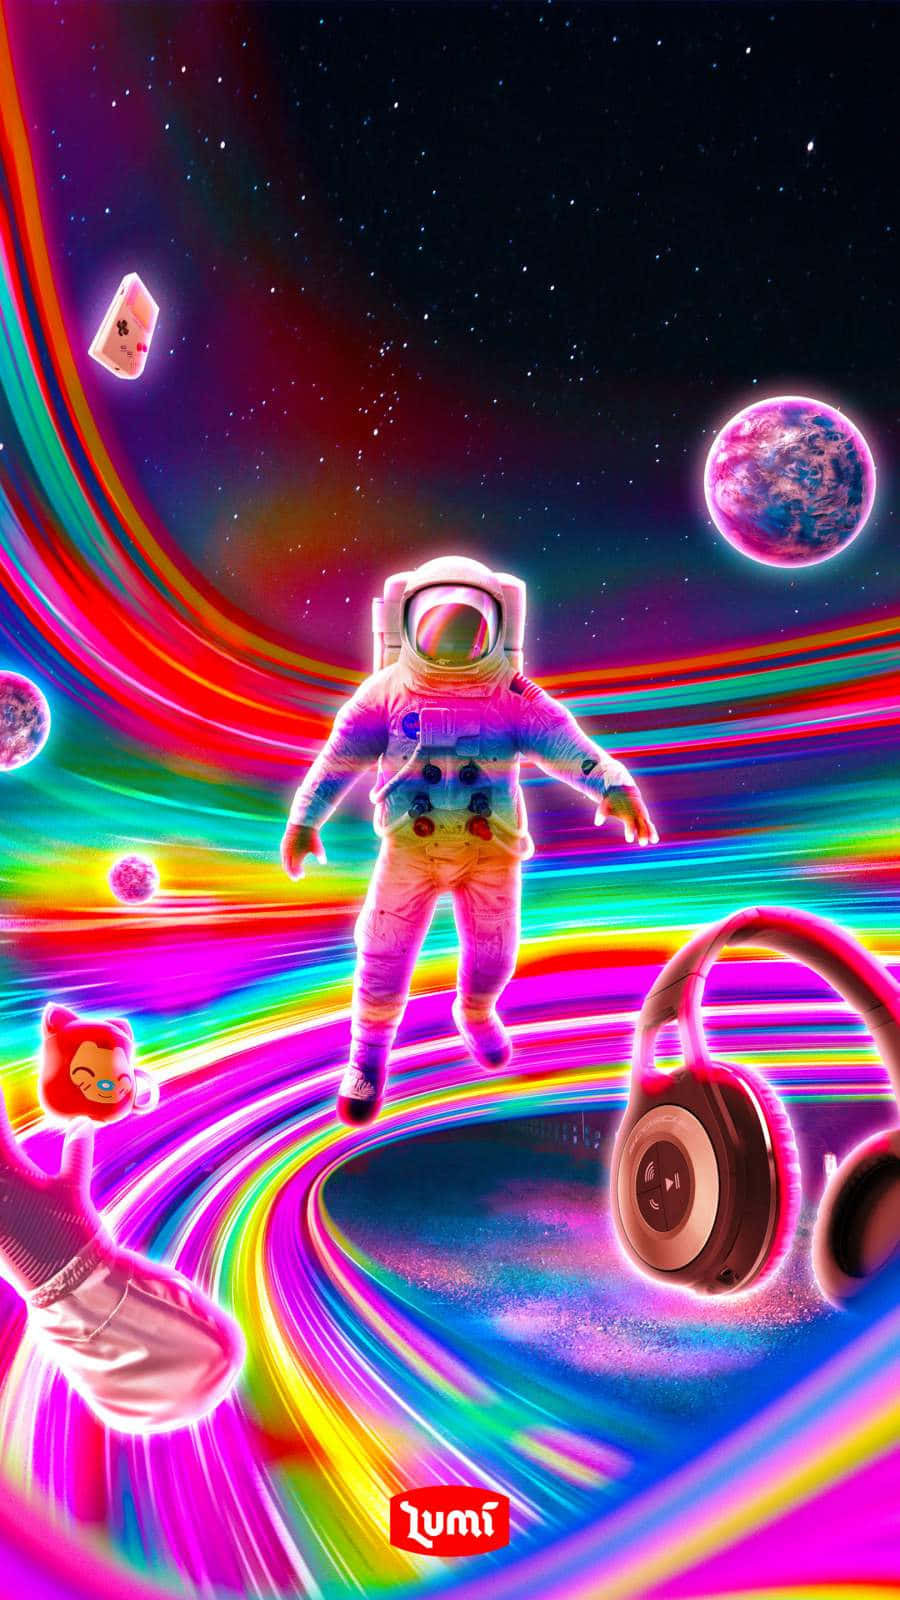 Et farverigt billede af en astronaut i rummet. Wallpaper